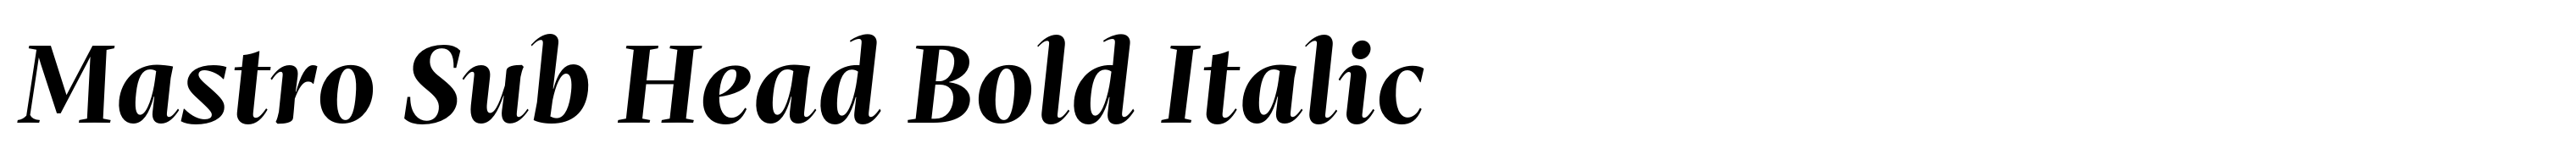 Mastro Sub Head Bold Italic